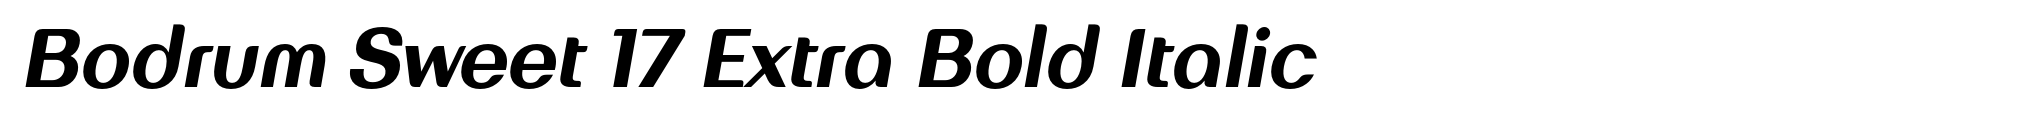 Bodrum Sweet 17 Extra Bold Italic image